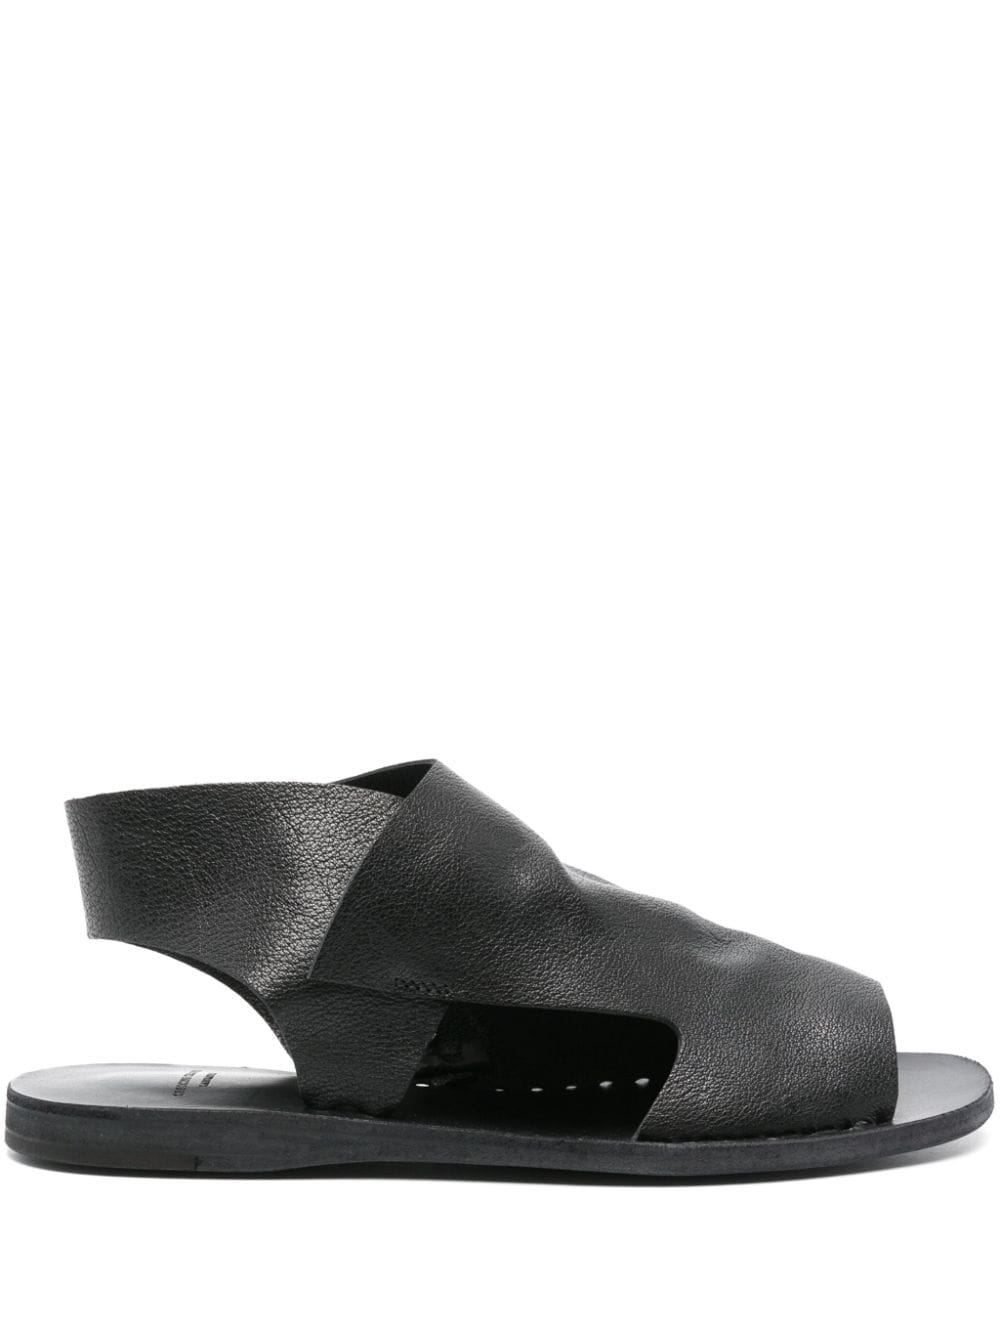 Officine Creative Itaca leather sandals - Black von Officine Creative